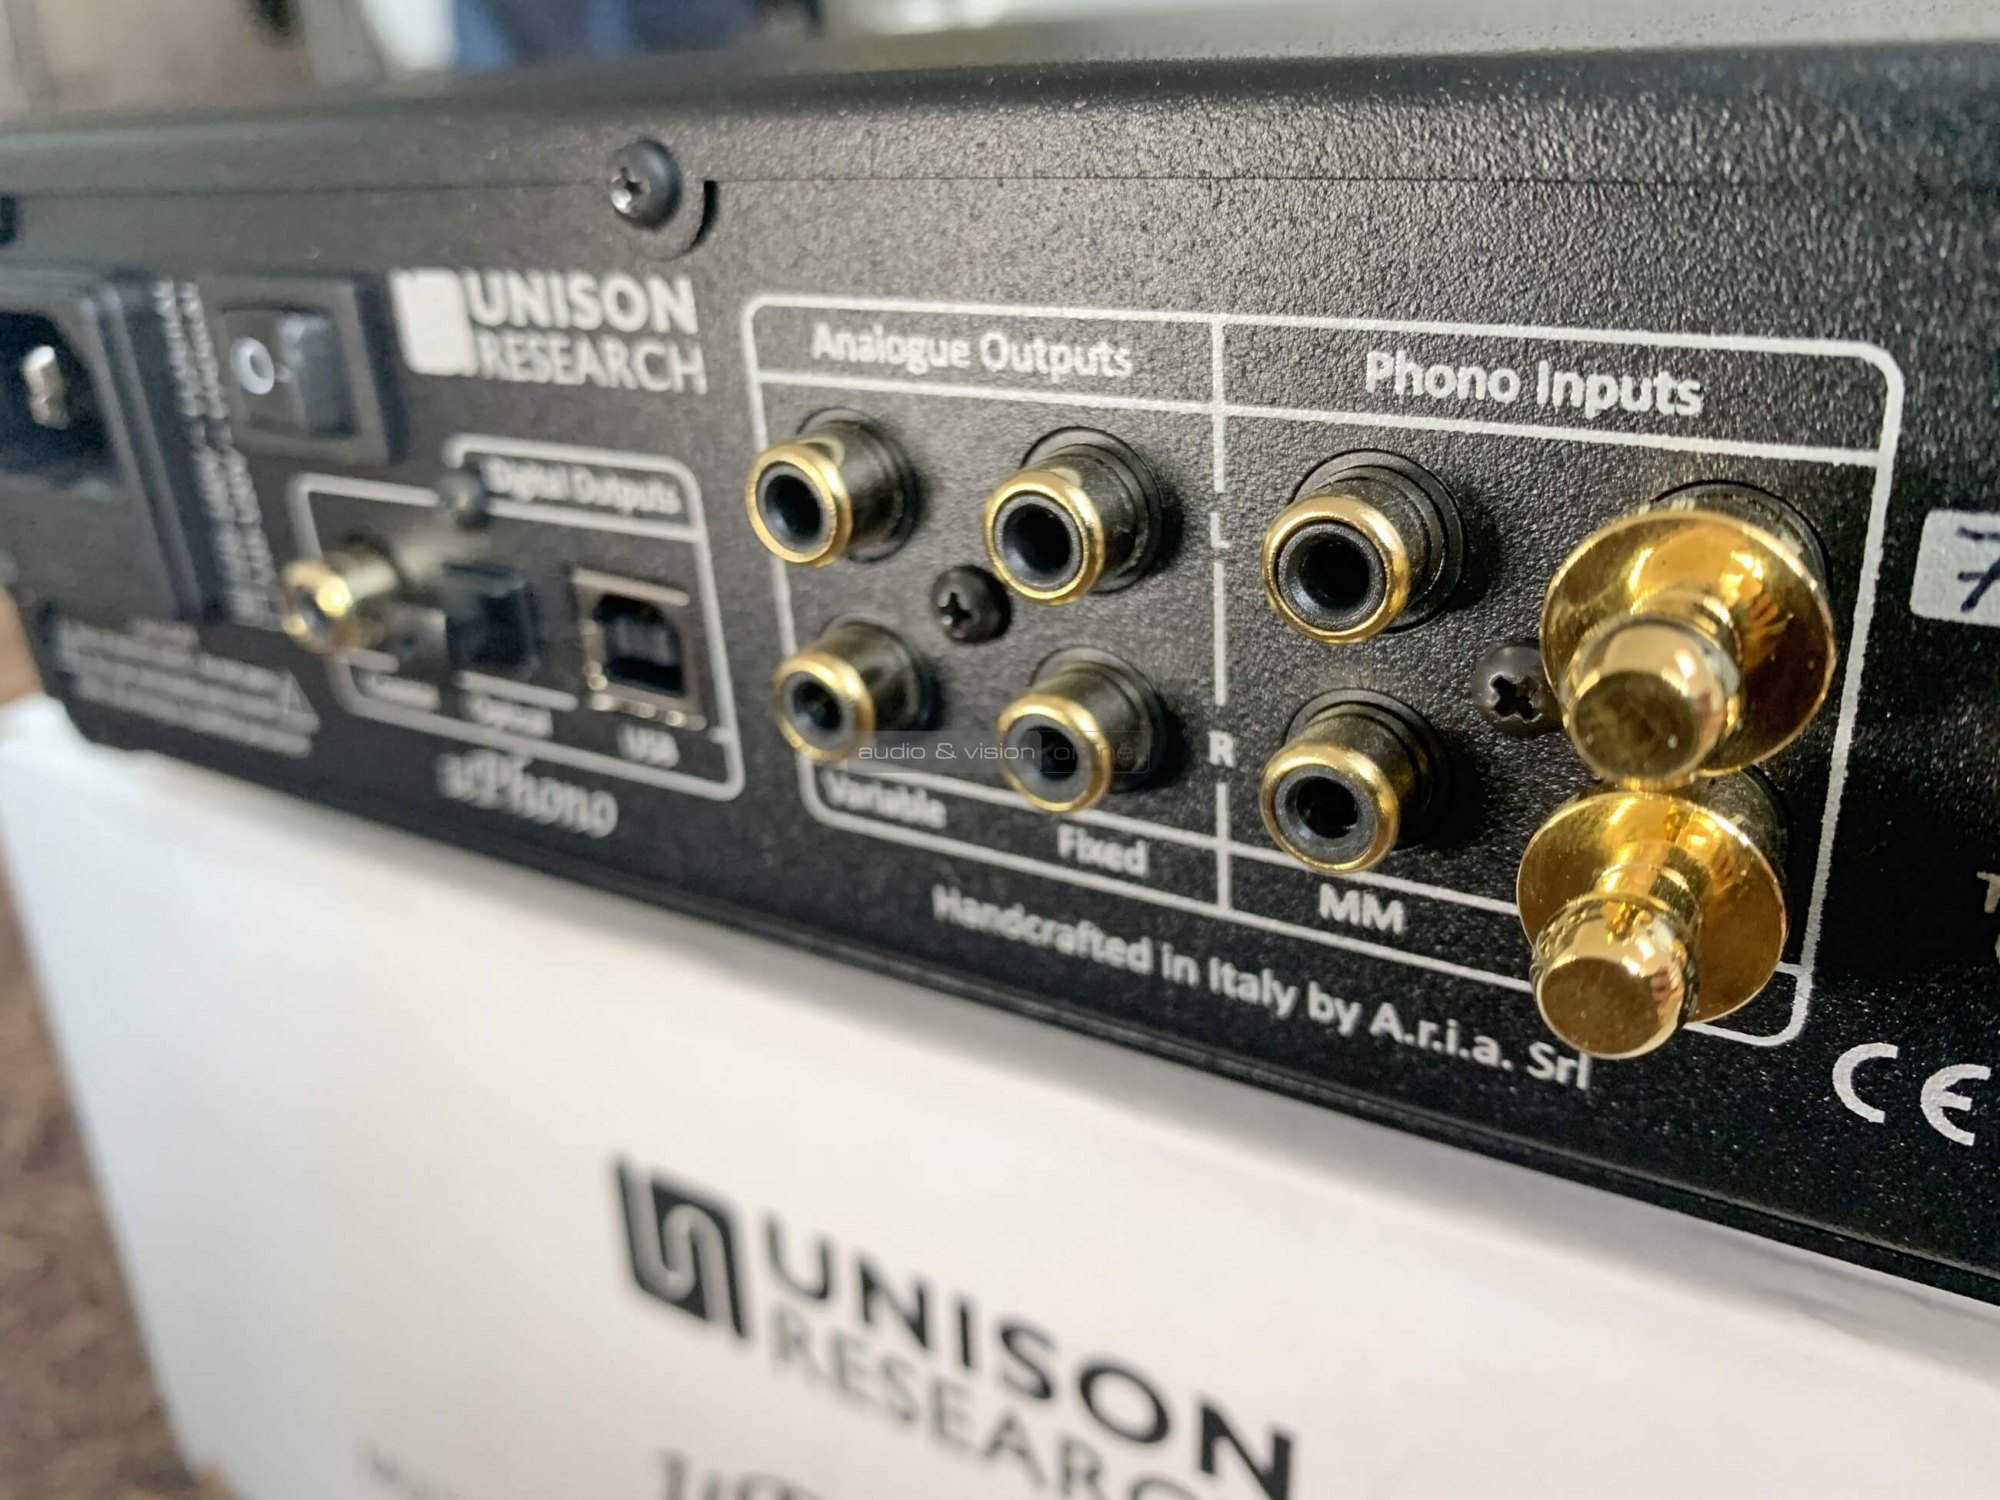 Unison Research uPhono plus phono előerősítő kimenetek